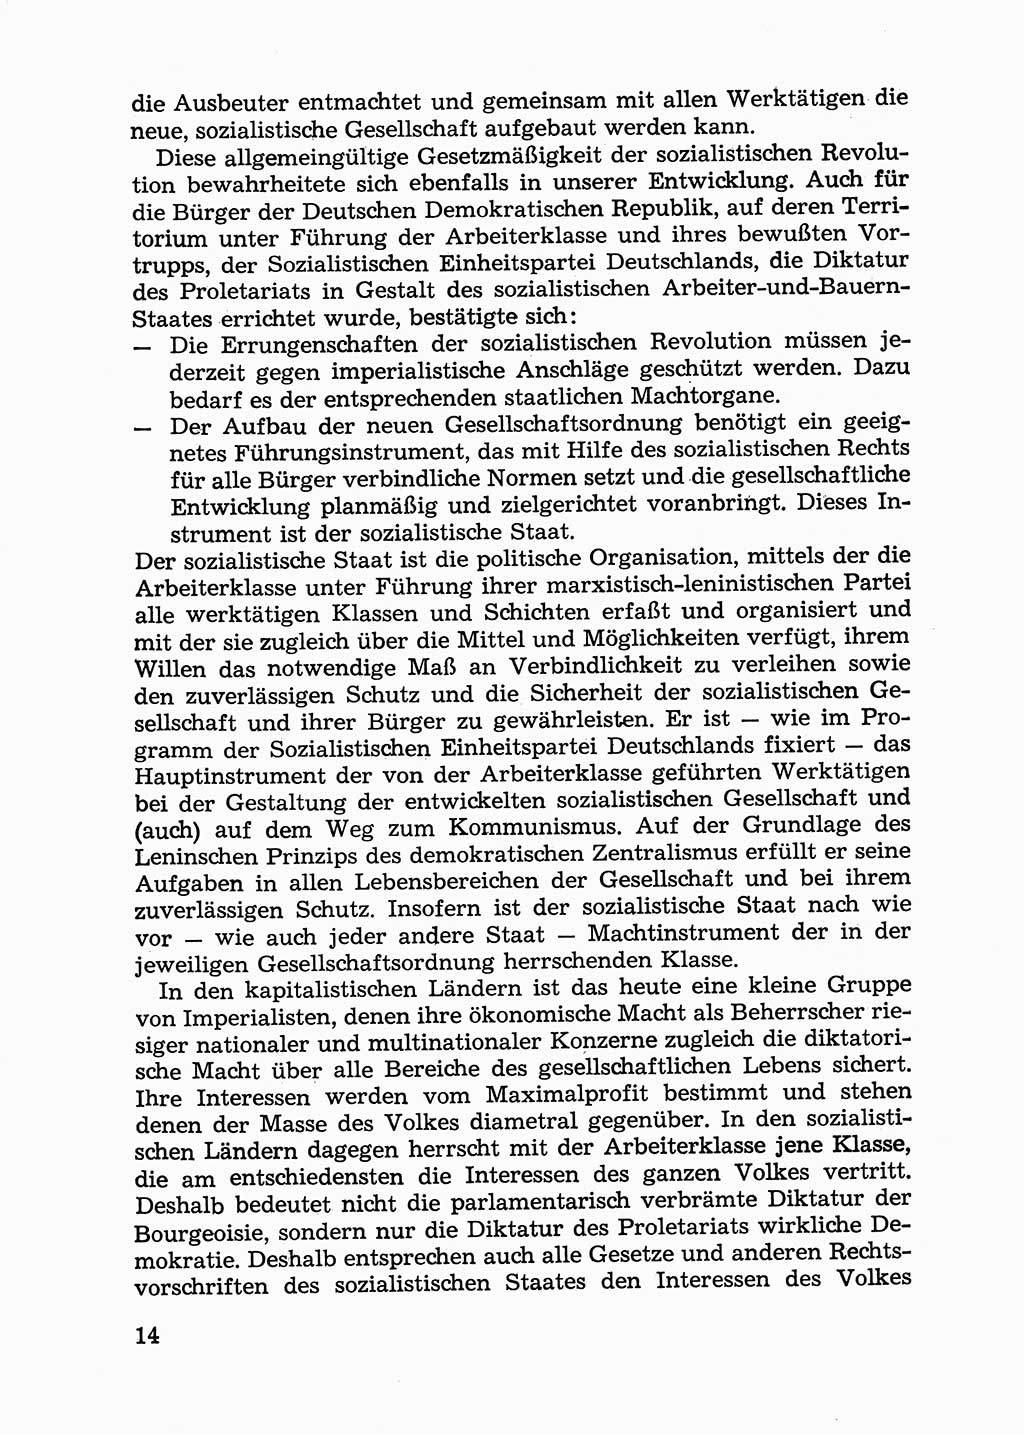 Handbuch für Betriebsangehörige, Abteilung Strafvollzug (SV) [Ministerium des Innern (MdI) Deutsche Demokratische Republik (DDR)] 1981, Seite 14 (Hb. BA Abt. SV MdI DDR 1981, S. 14)